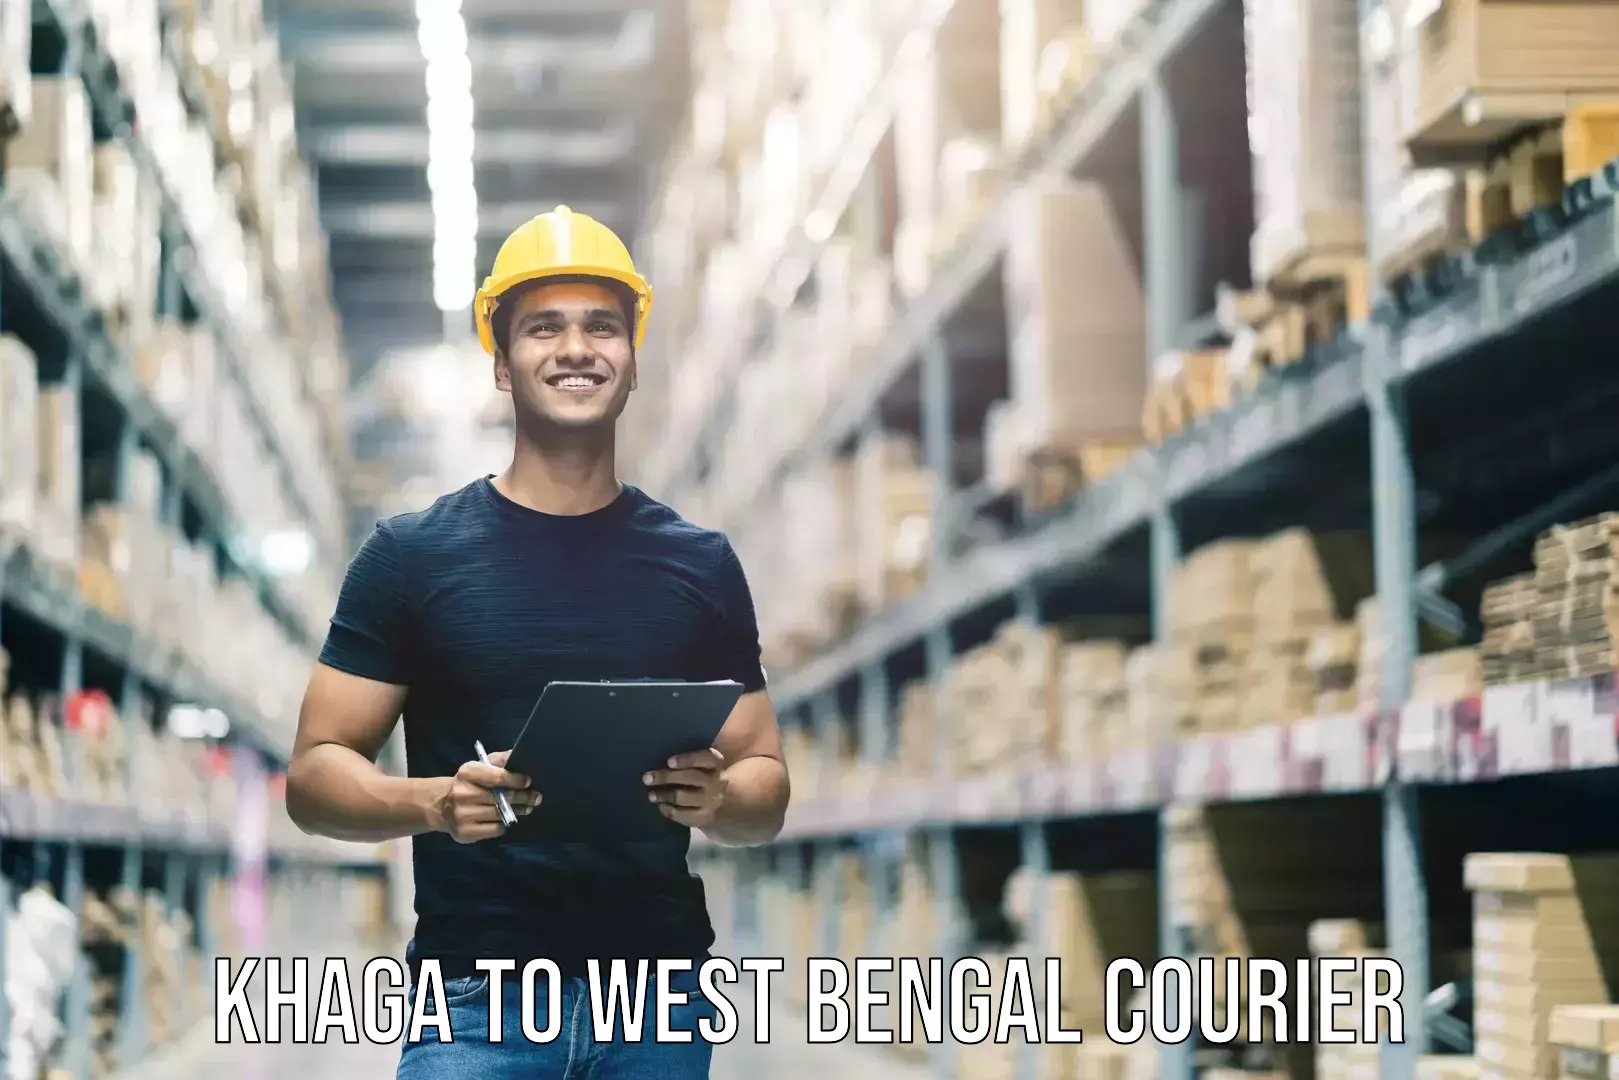 Luggage shipment tracking Khaga to West Bengal